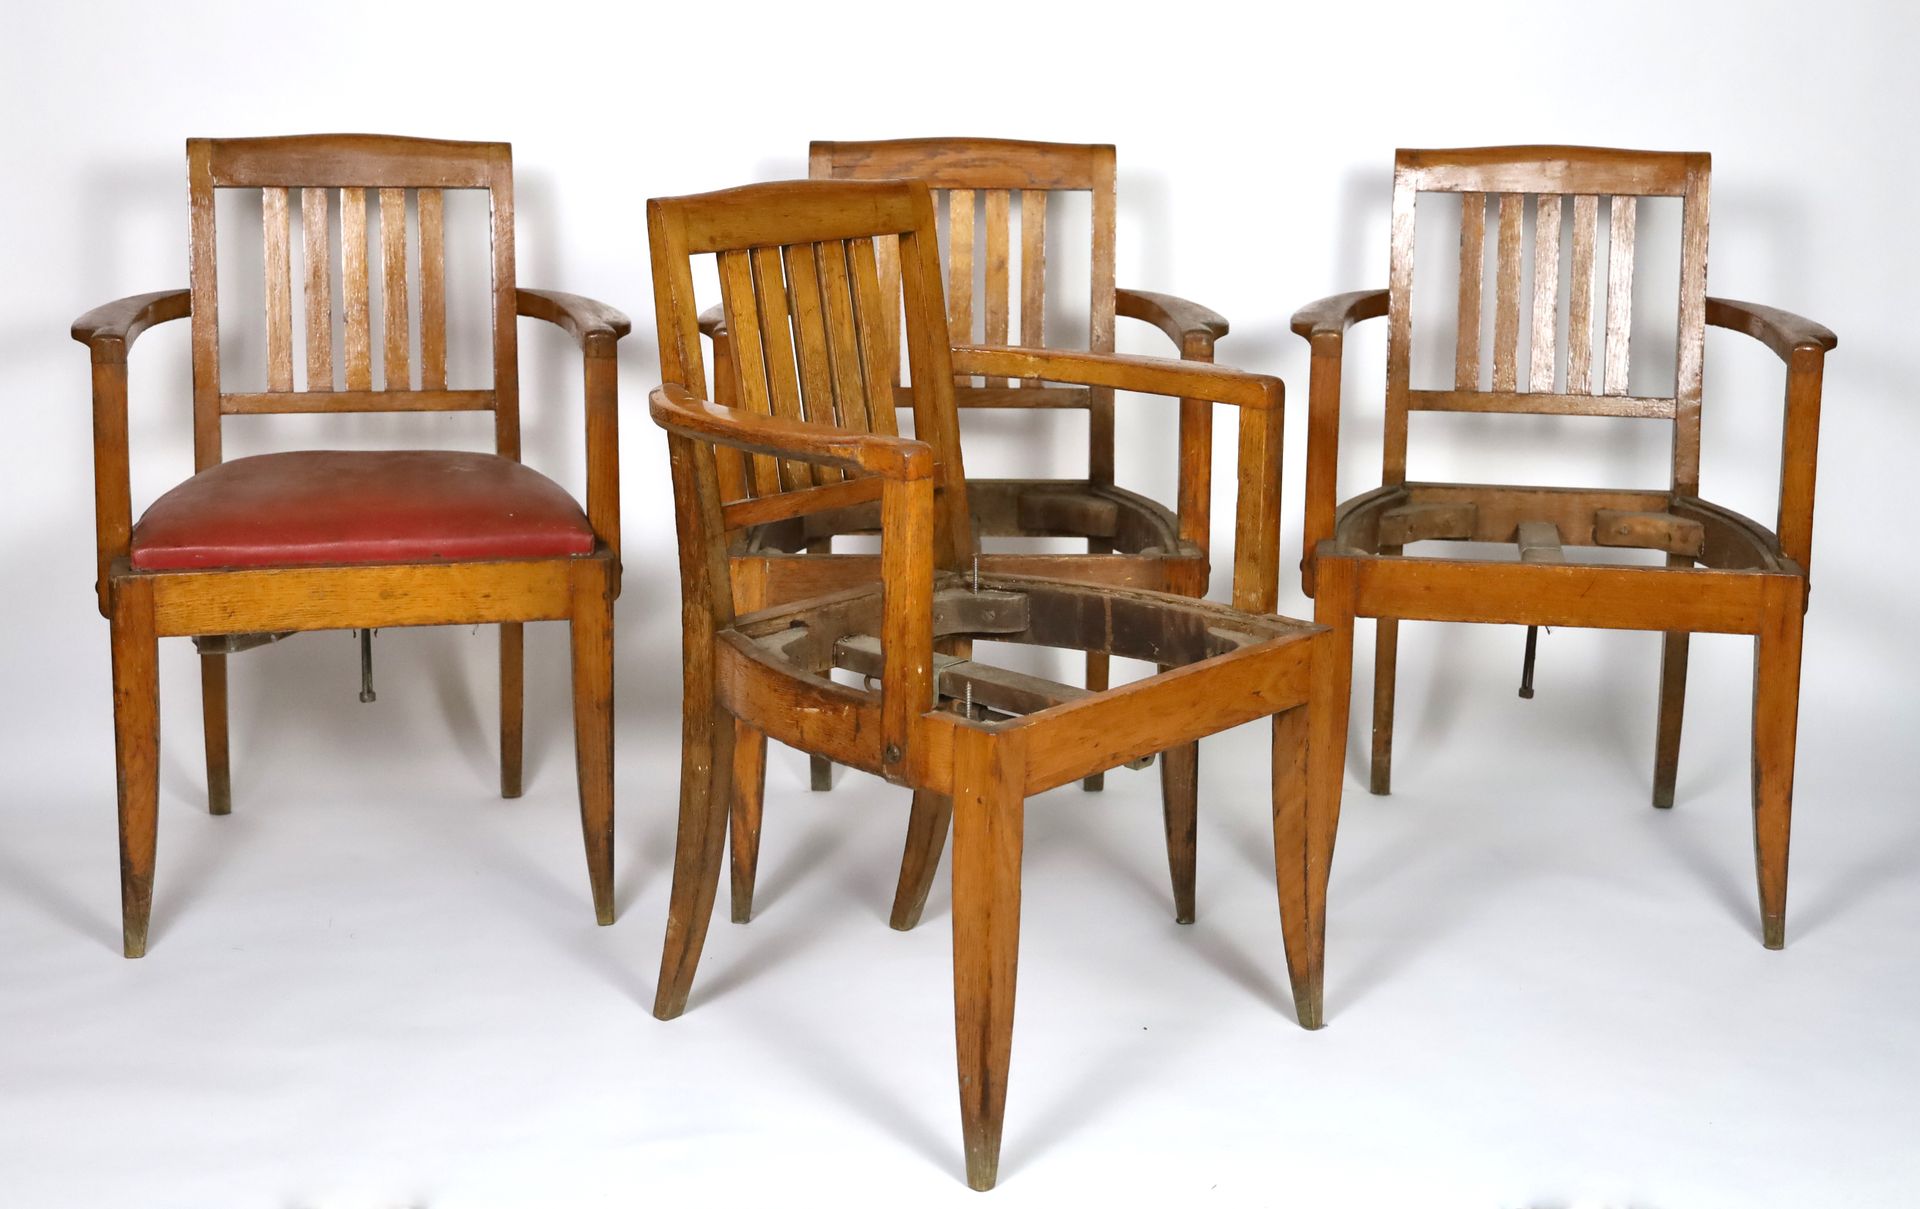 Null CGT Ile de France 1949 - 套装四把天然木扶手椅，座椅为红色鼹鼠皮（只有一把） - 高84厘米，宽60厘米，长44厘米（磨损）。